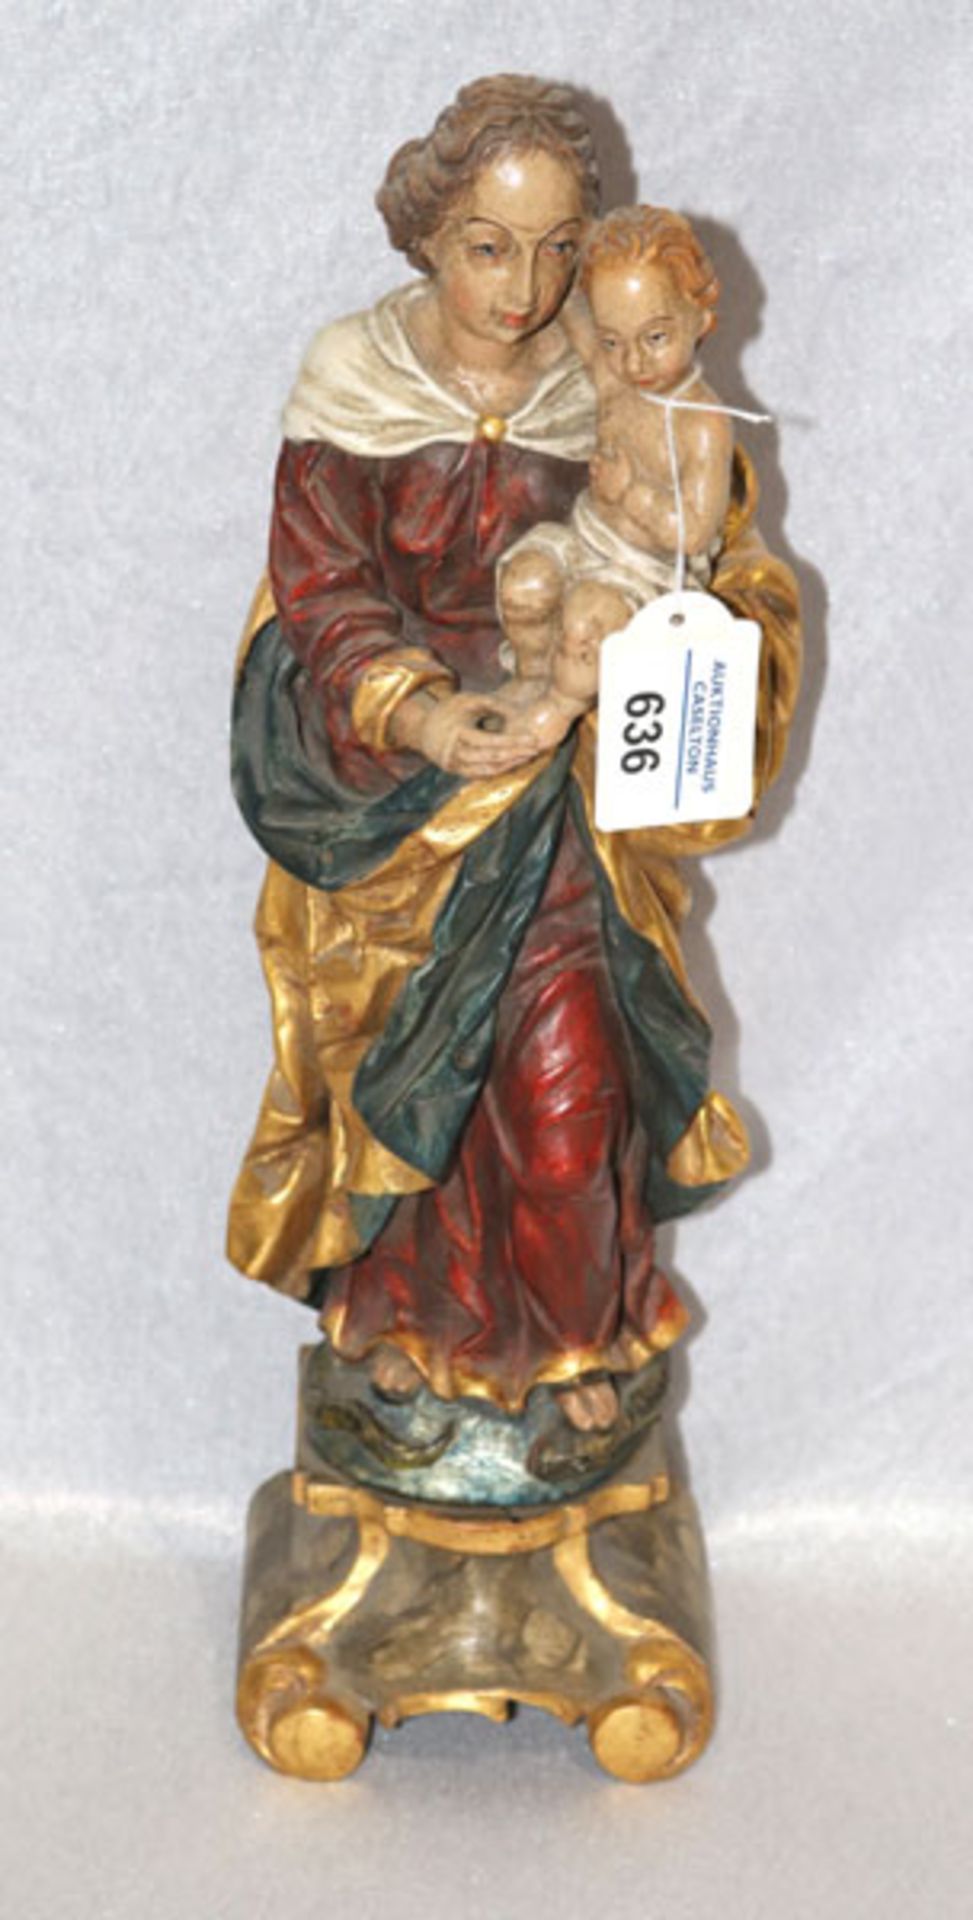 Holz Figurenskulptur 'Maria mit Kind', farbig gefaßt, auf Holzsockel montiert, H 37 cm